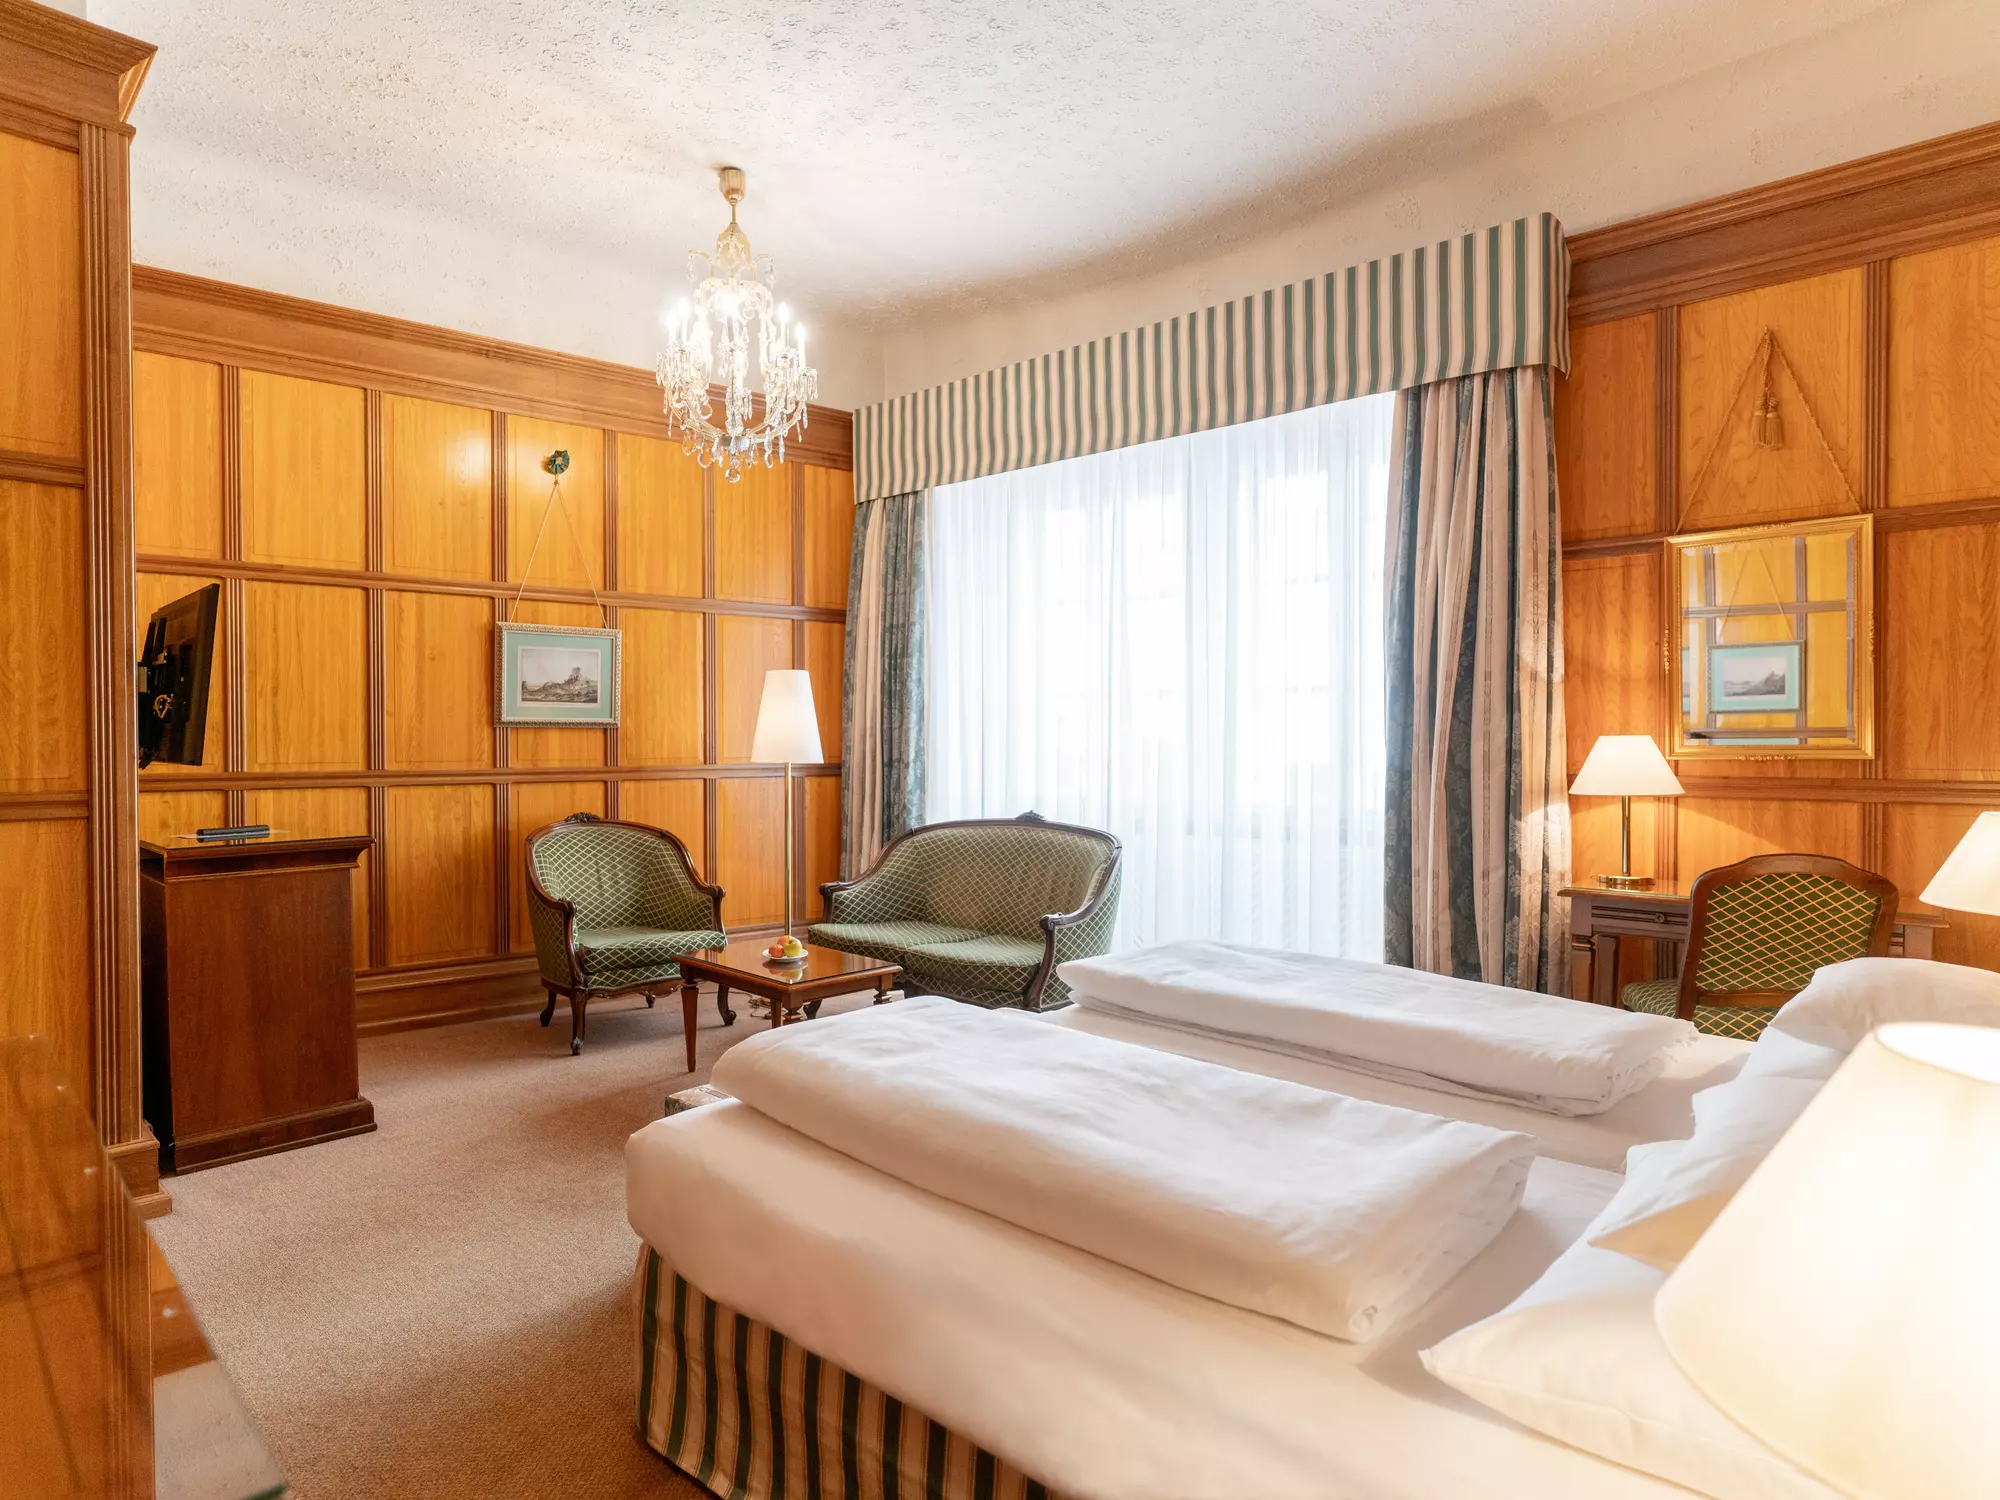 Doppelzimmer klassisch, traditionell, Hotel König von Ungarn, Wien